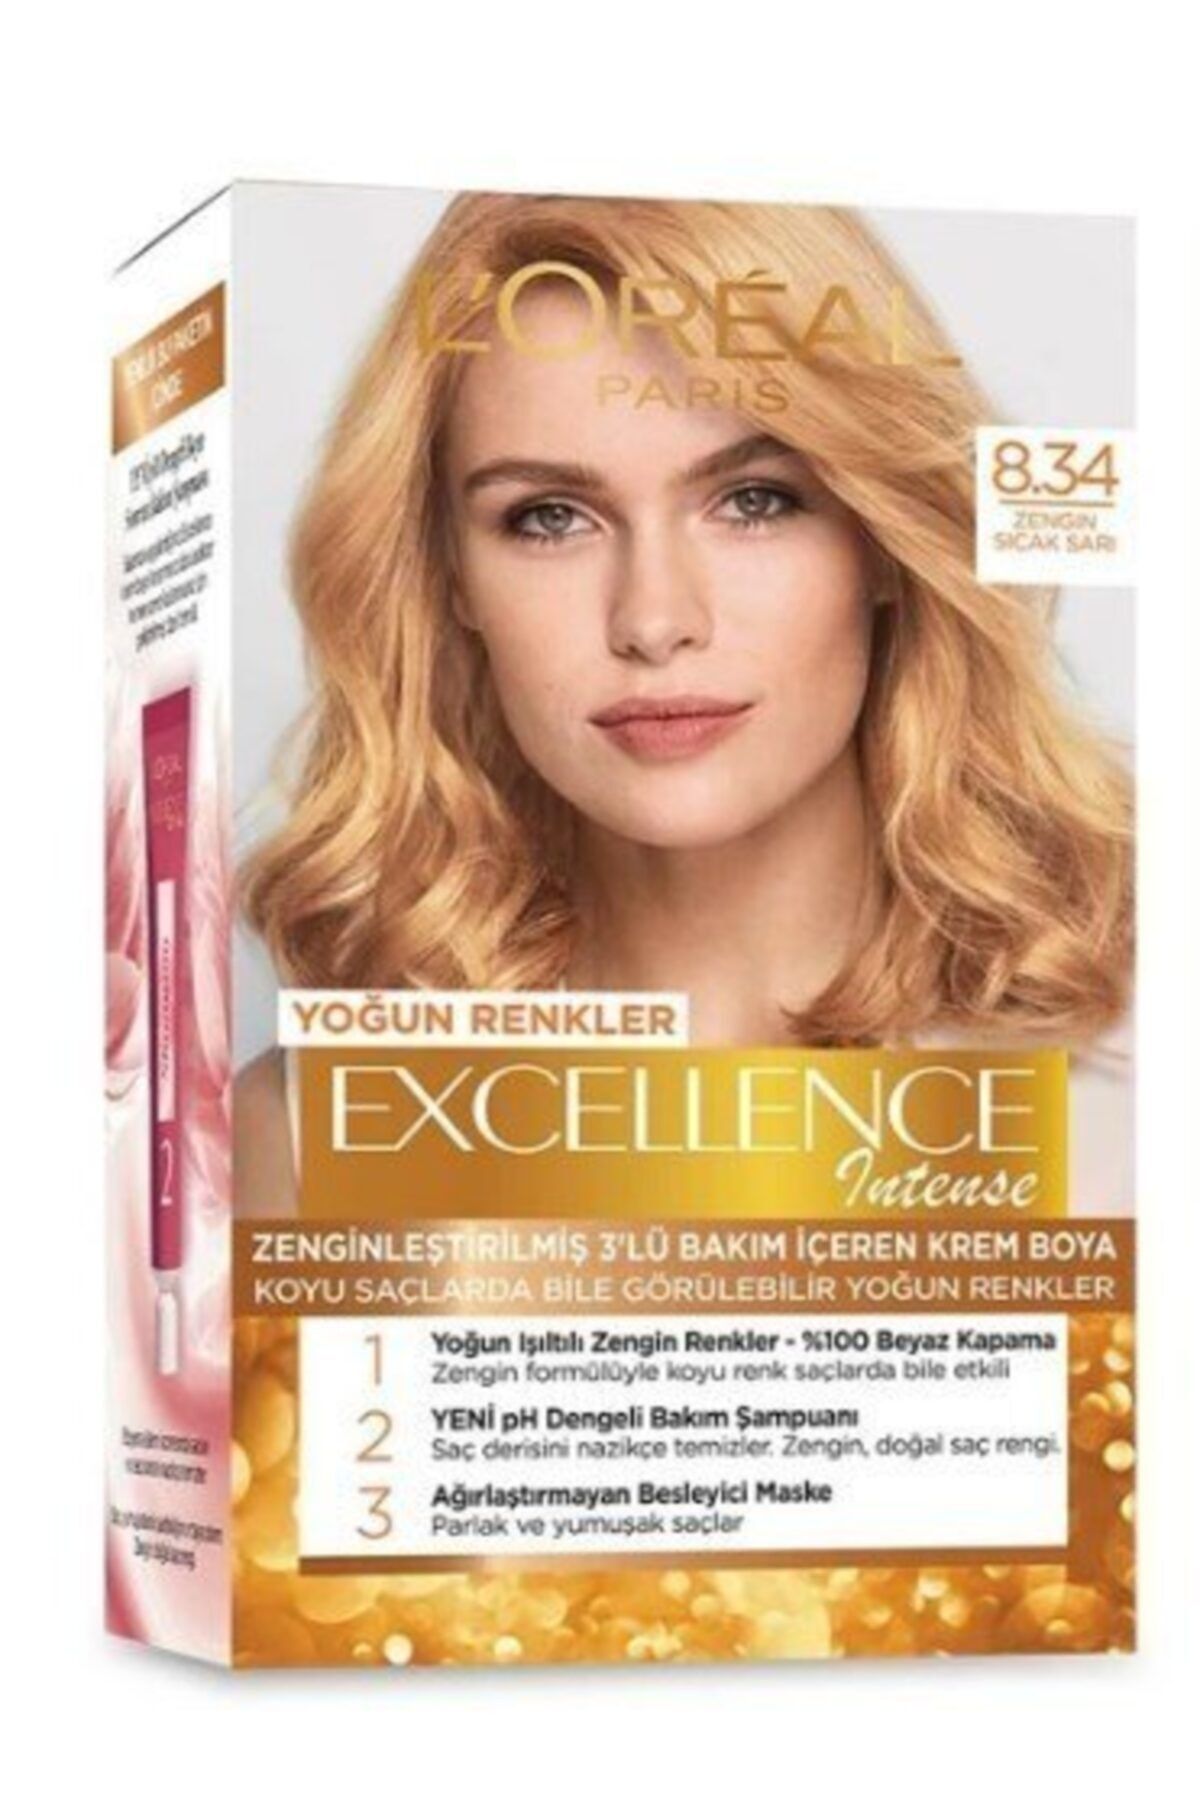 L'Oreal Paris Saç Boyası - Excellence Creme 8.34 Zengin Sıcak Sarı